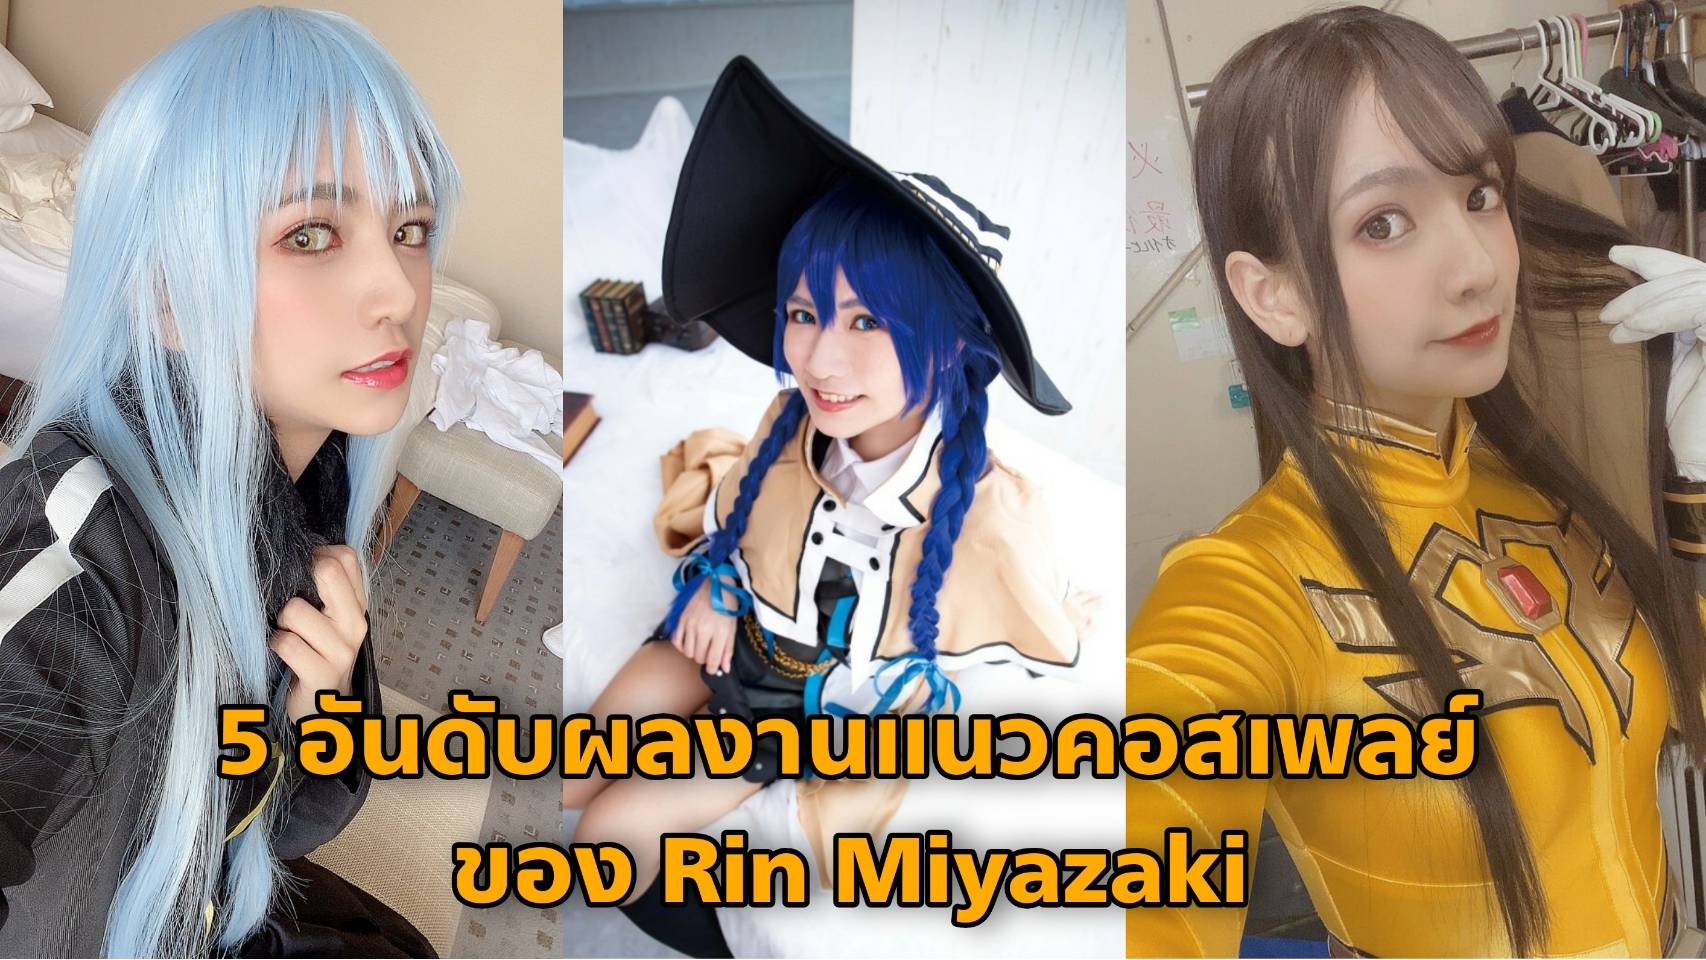 5 ผลงานแนว Cosplay ของ Rin Miyazaki (ริน มิยาซากิ)  7